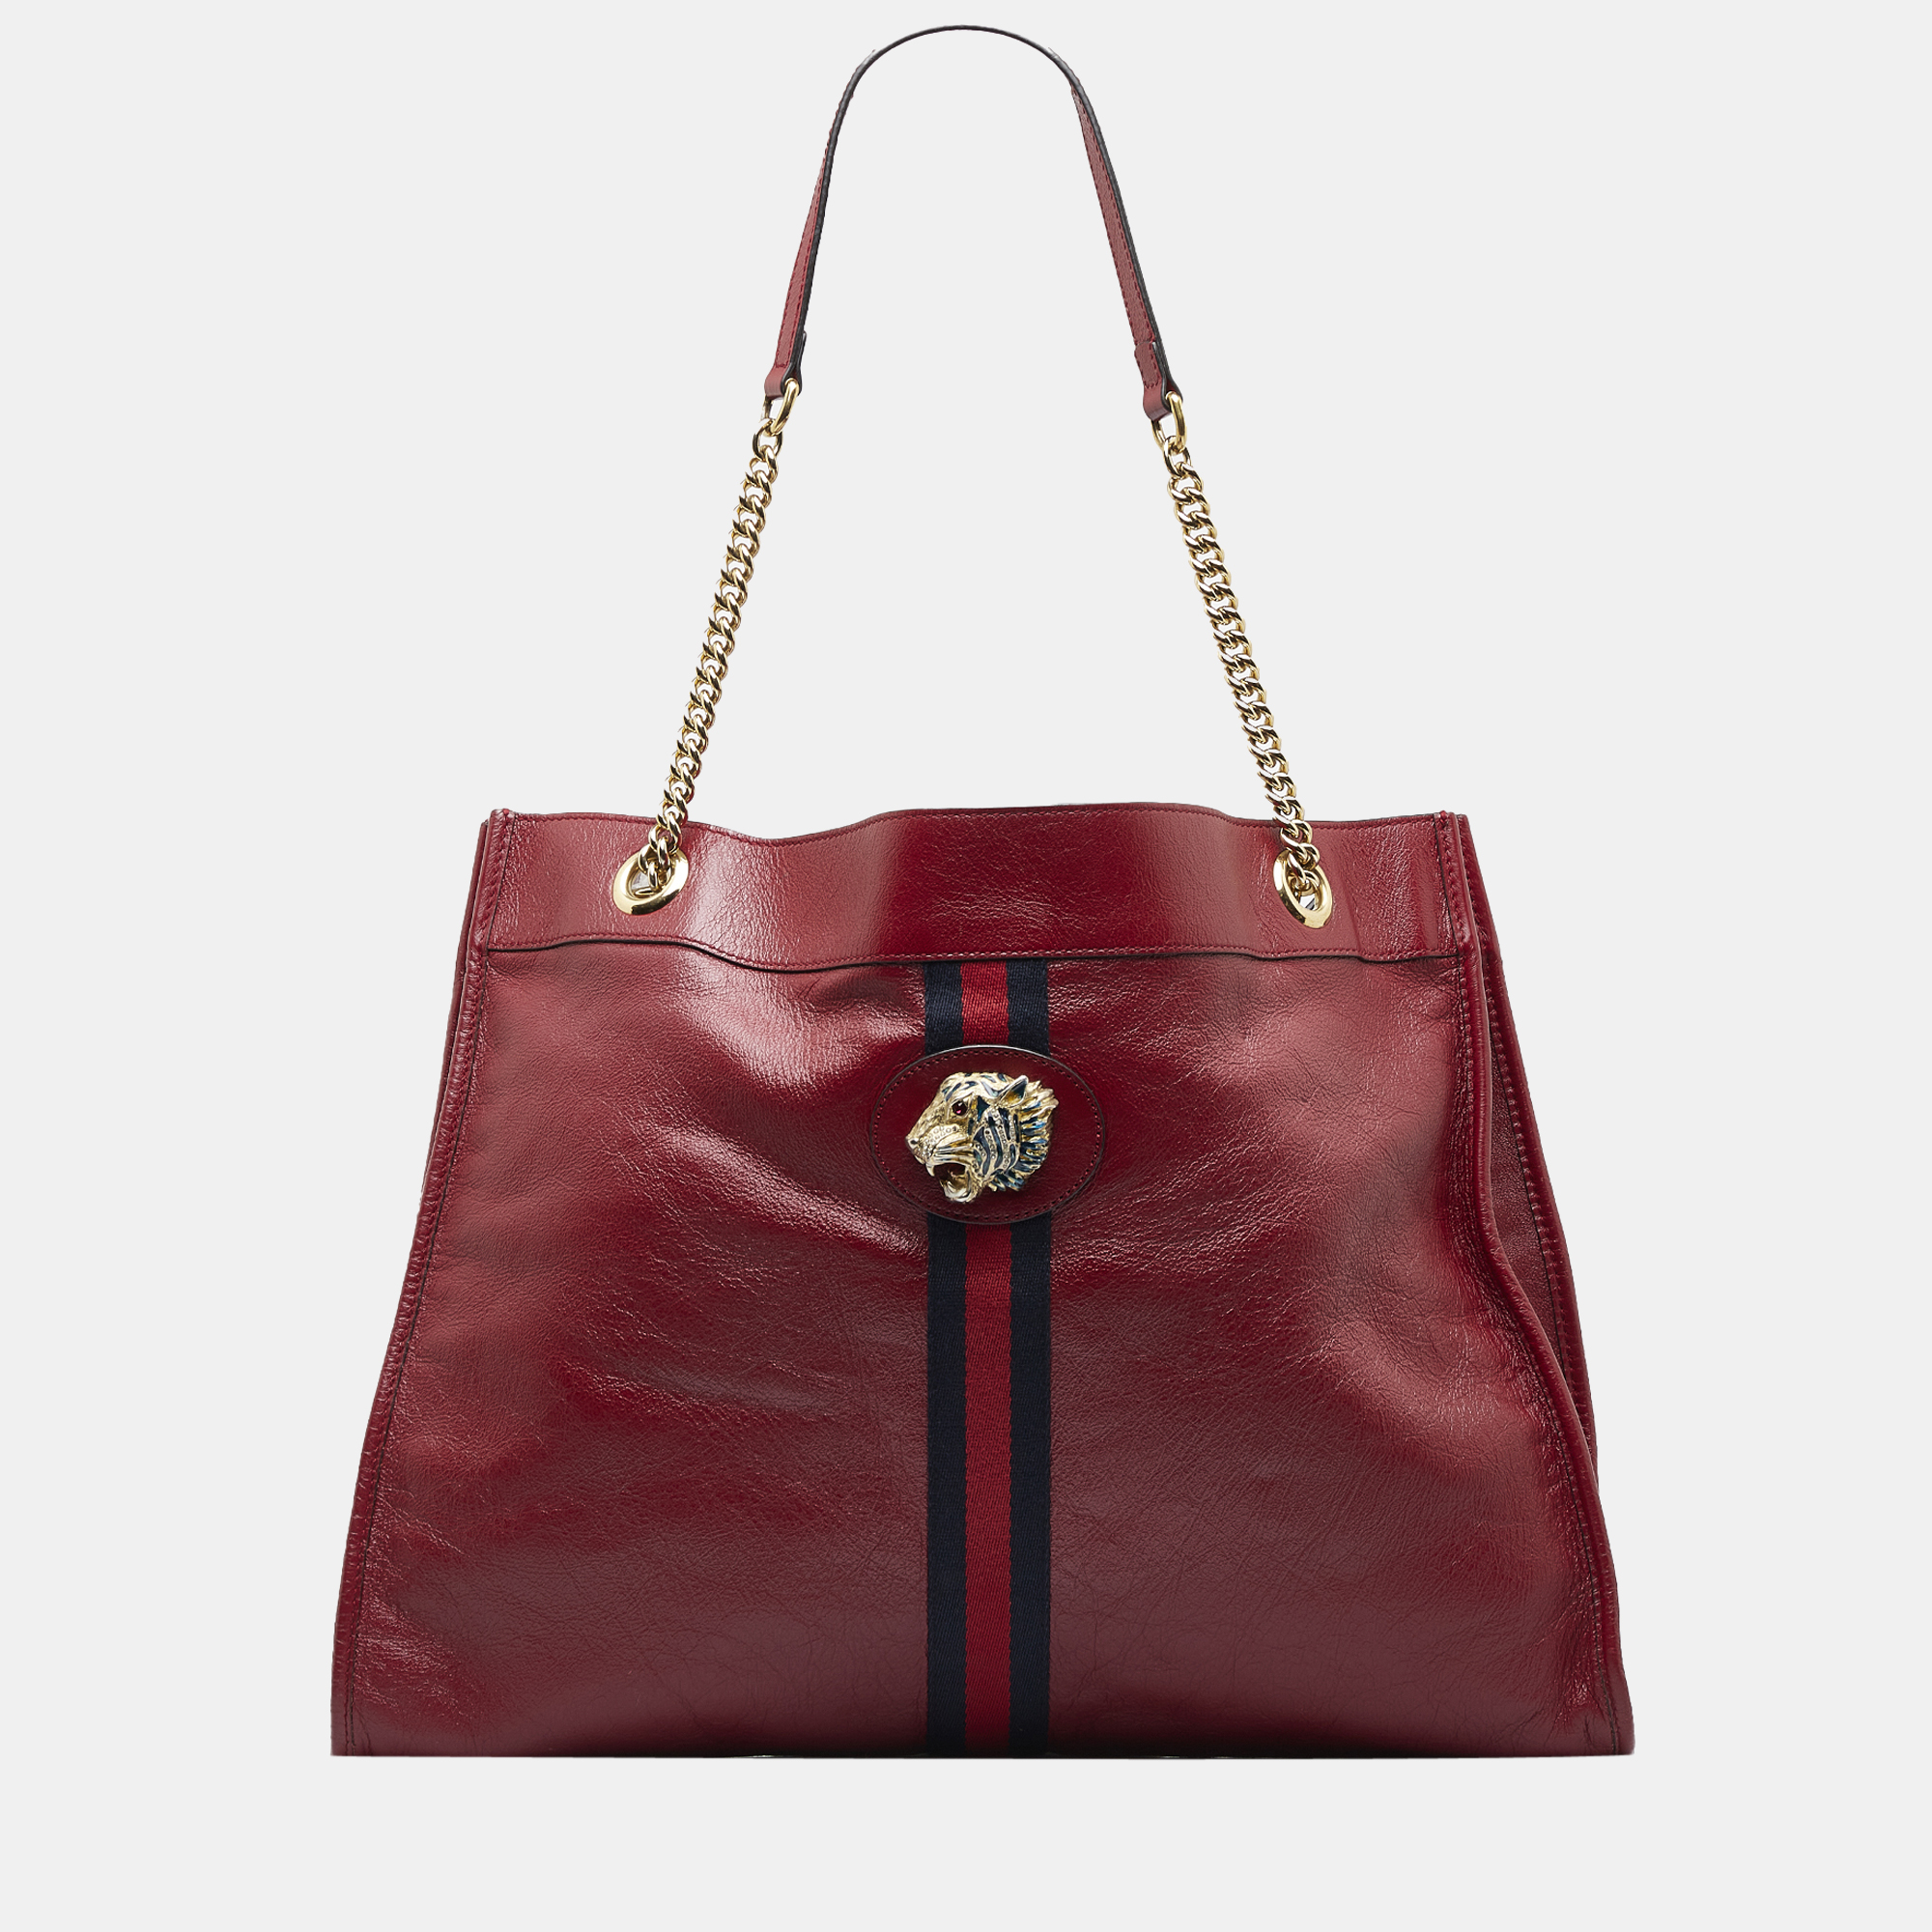 Gucci red large rajah tote bag